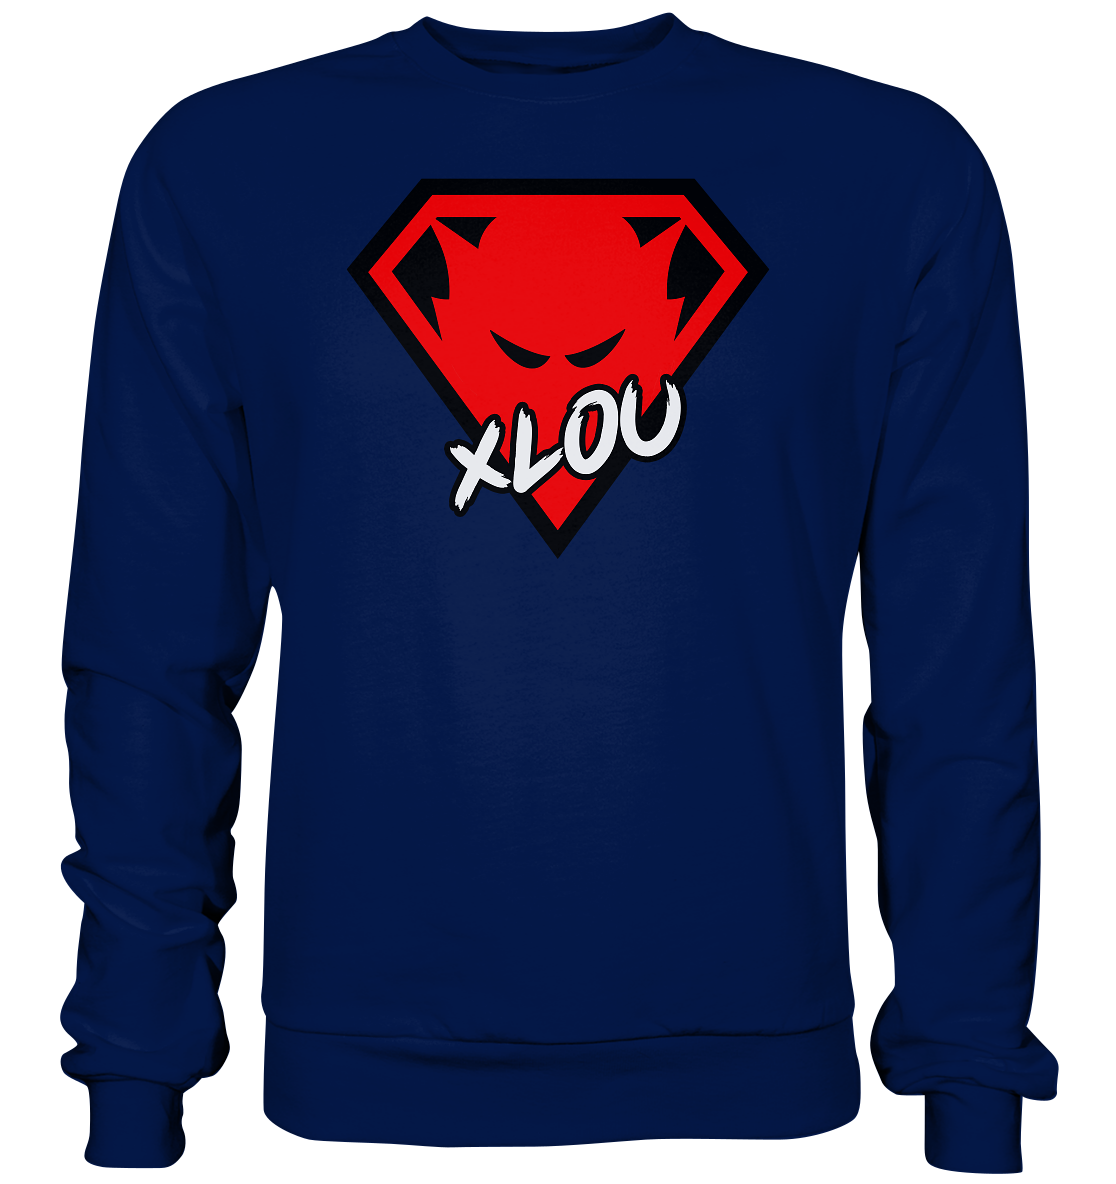 XLOU - Basic Sweatshirt